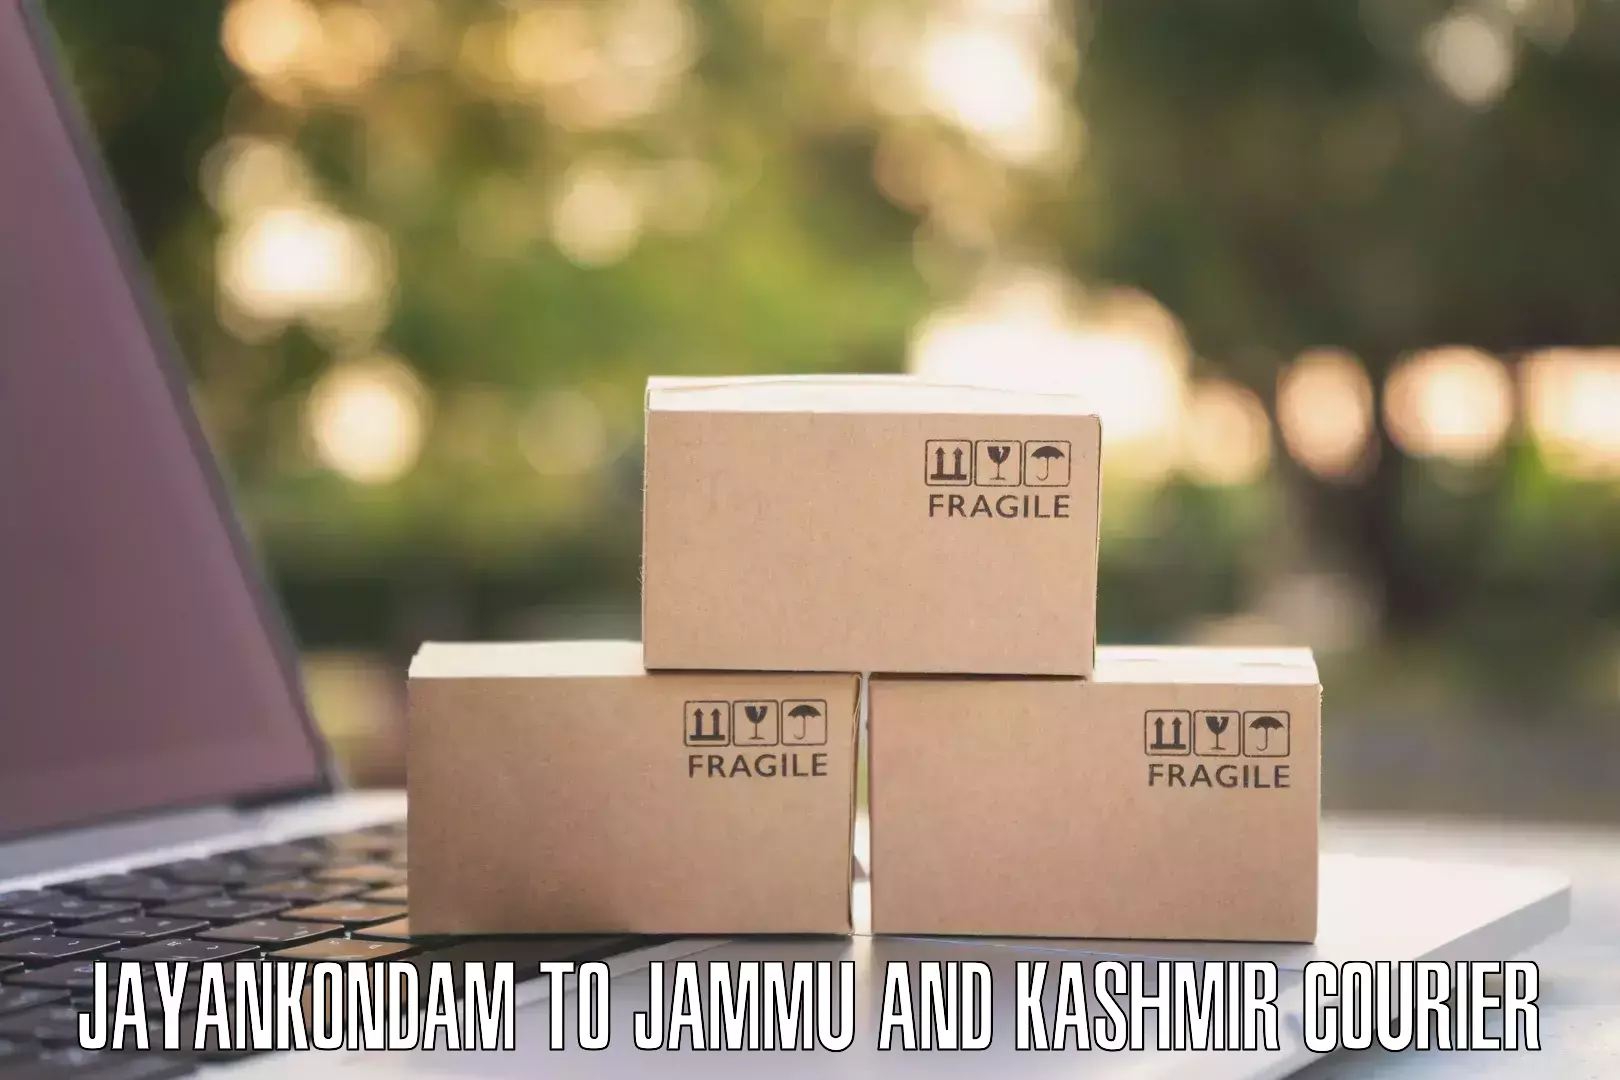 Streamlined shipping process Jayankondam to University of Kashmir Srinagar